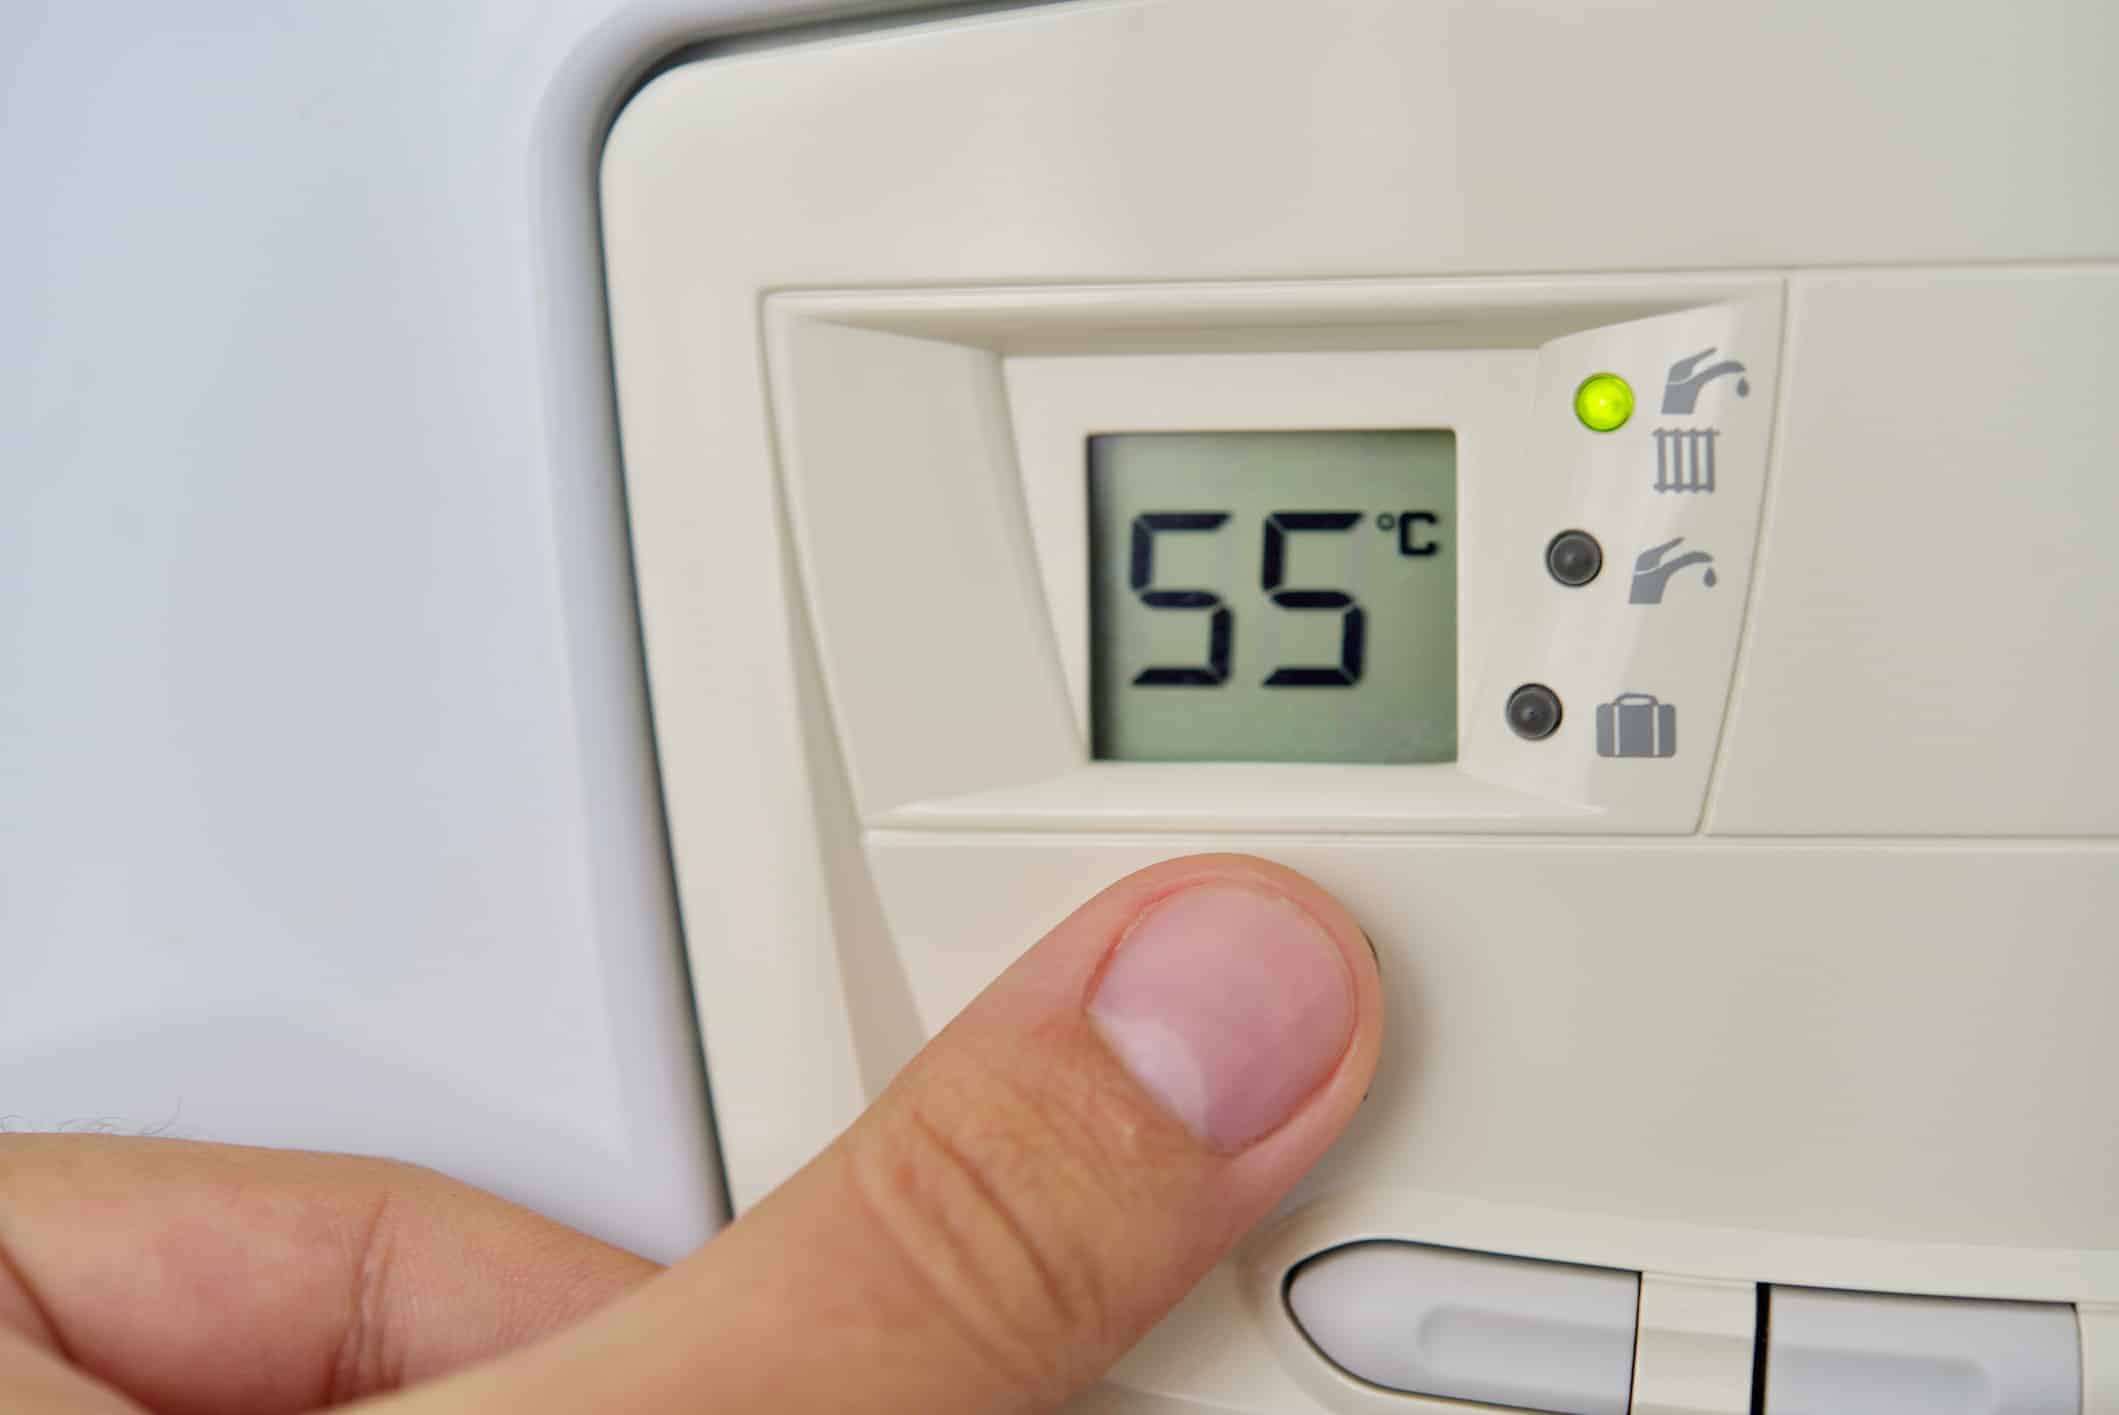 Thermostat d'ambiance : comment ça marche & lequel choisir ?